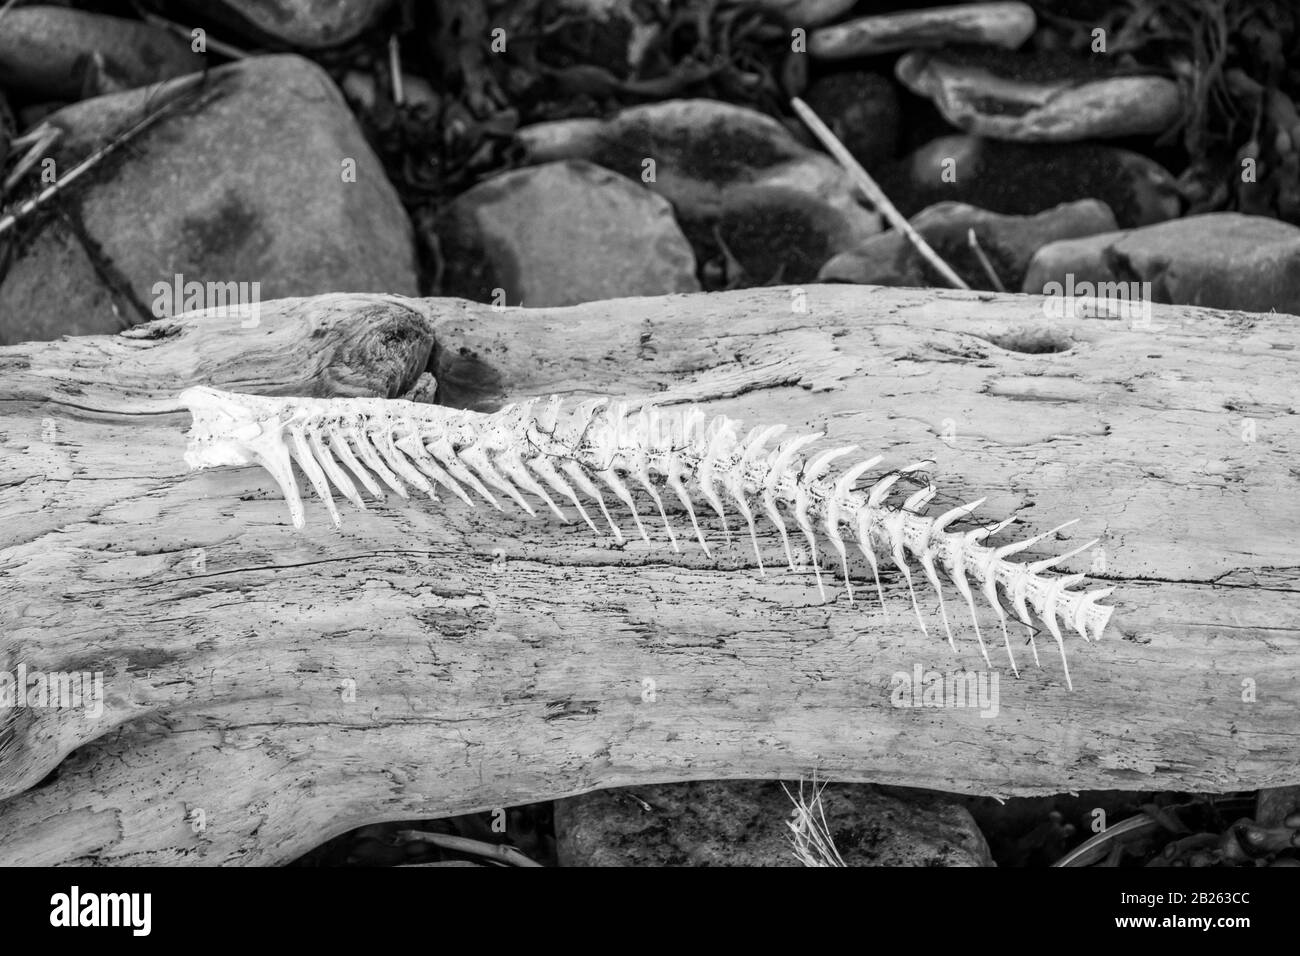 Fish bone lying on driftwood at Atlantic coast in Iceland black and white photo Stock Photo